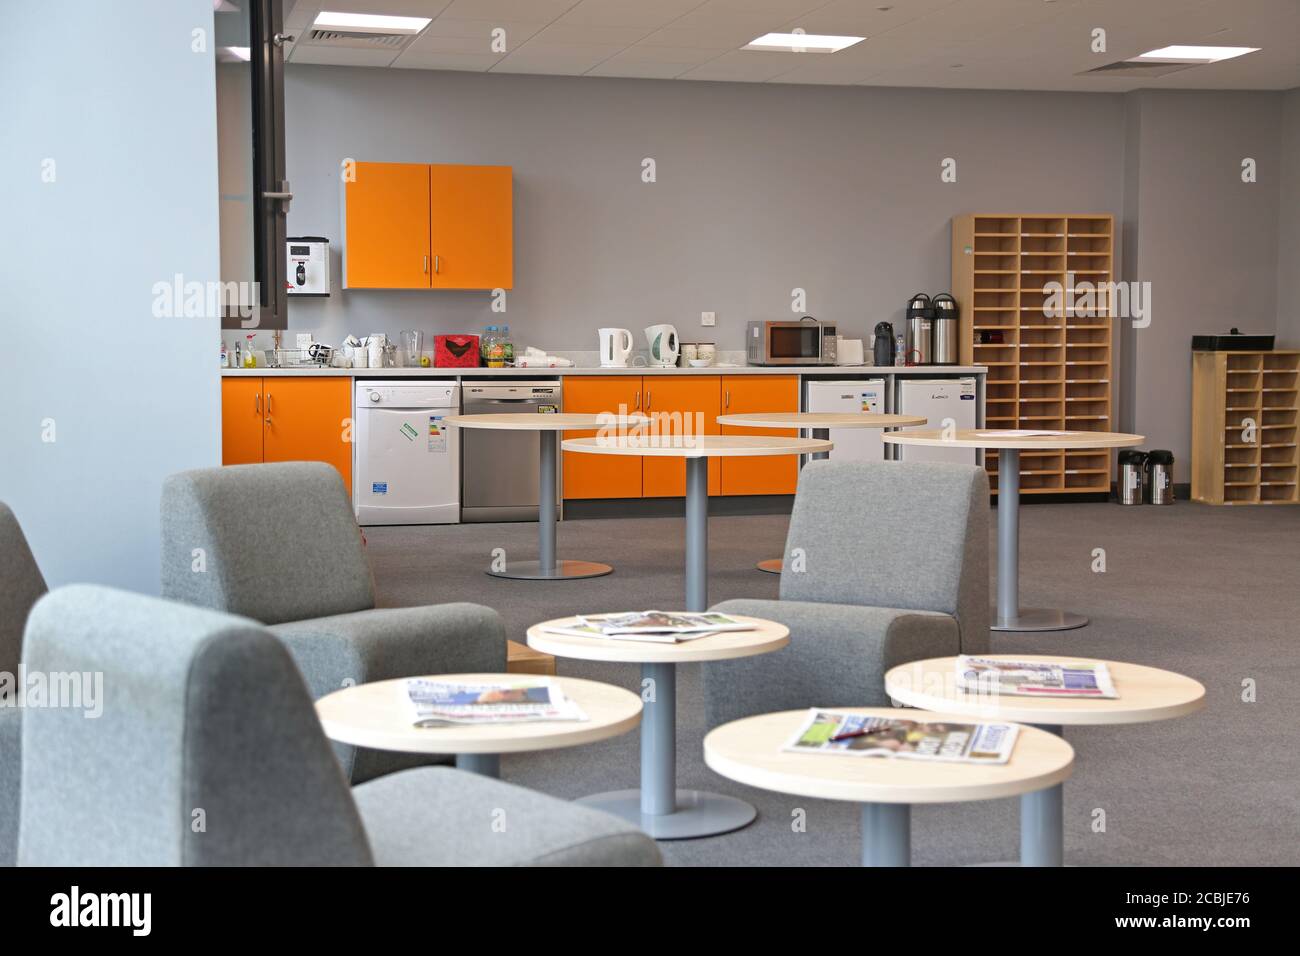 Camera del personale in una scuola secondaria di Londra appena completata. Presenta un'area cucina con frigoriferi e lavastoviglie e un'area salotto in primo piano. Foto Stock